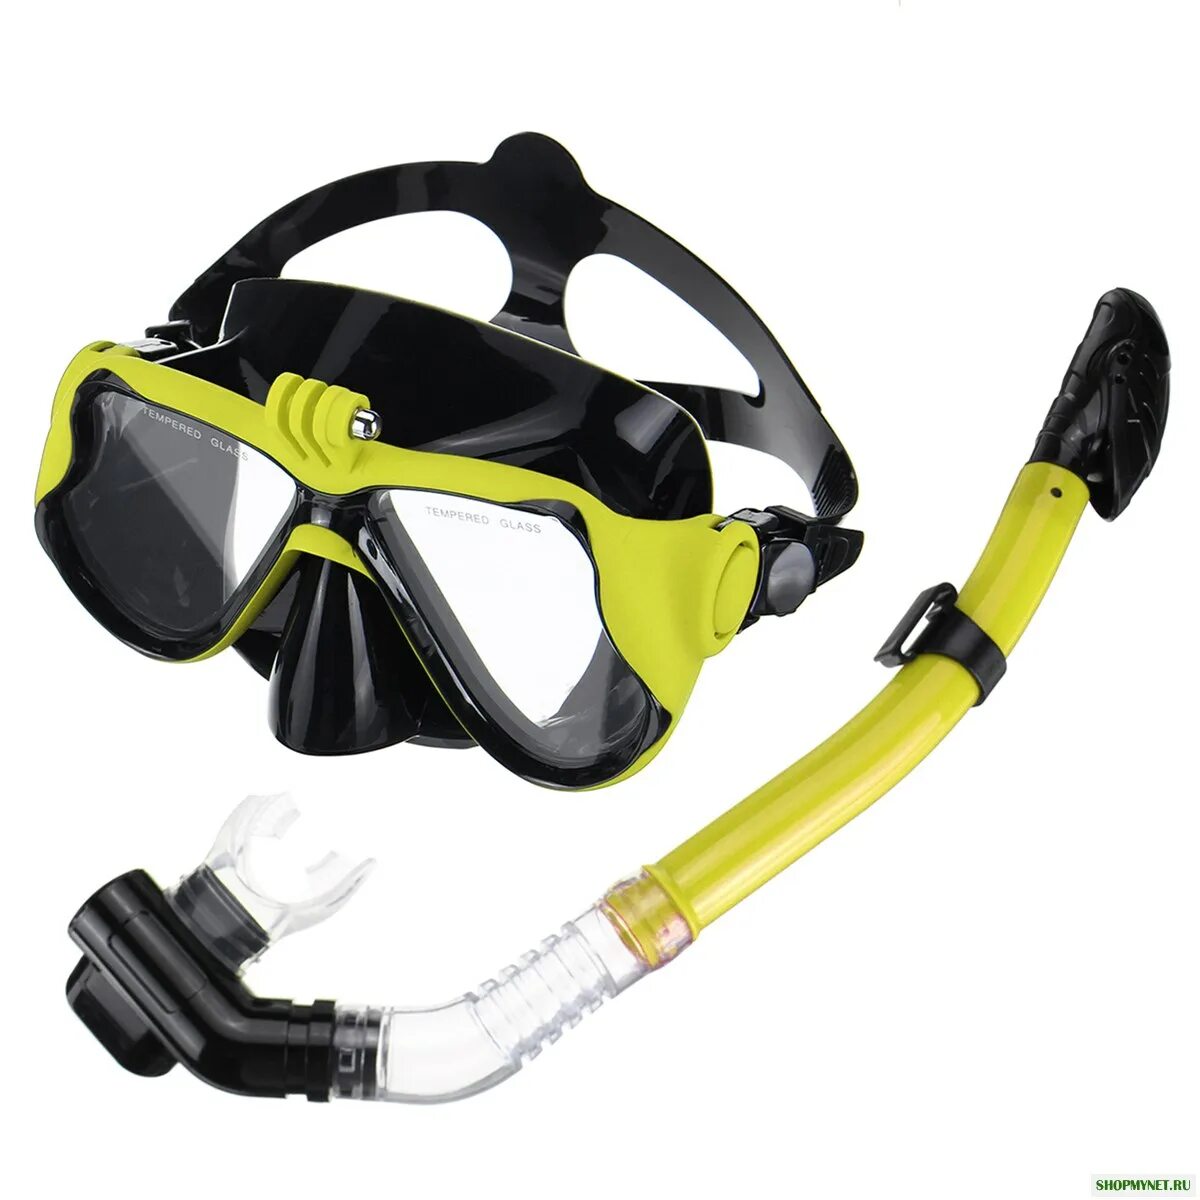 Маска для снорклинга Scuba. Mask Snorkel Set PVC маска+трубка. Маска или трубка для подводного плавания Beuchat smile snorkelling Mask. Маска для дайвинга с трубкой Tiggo. Купить подводную маску с трубкой